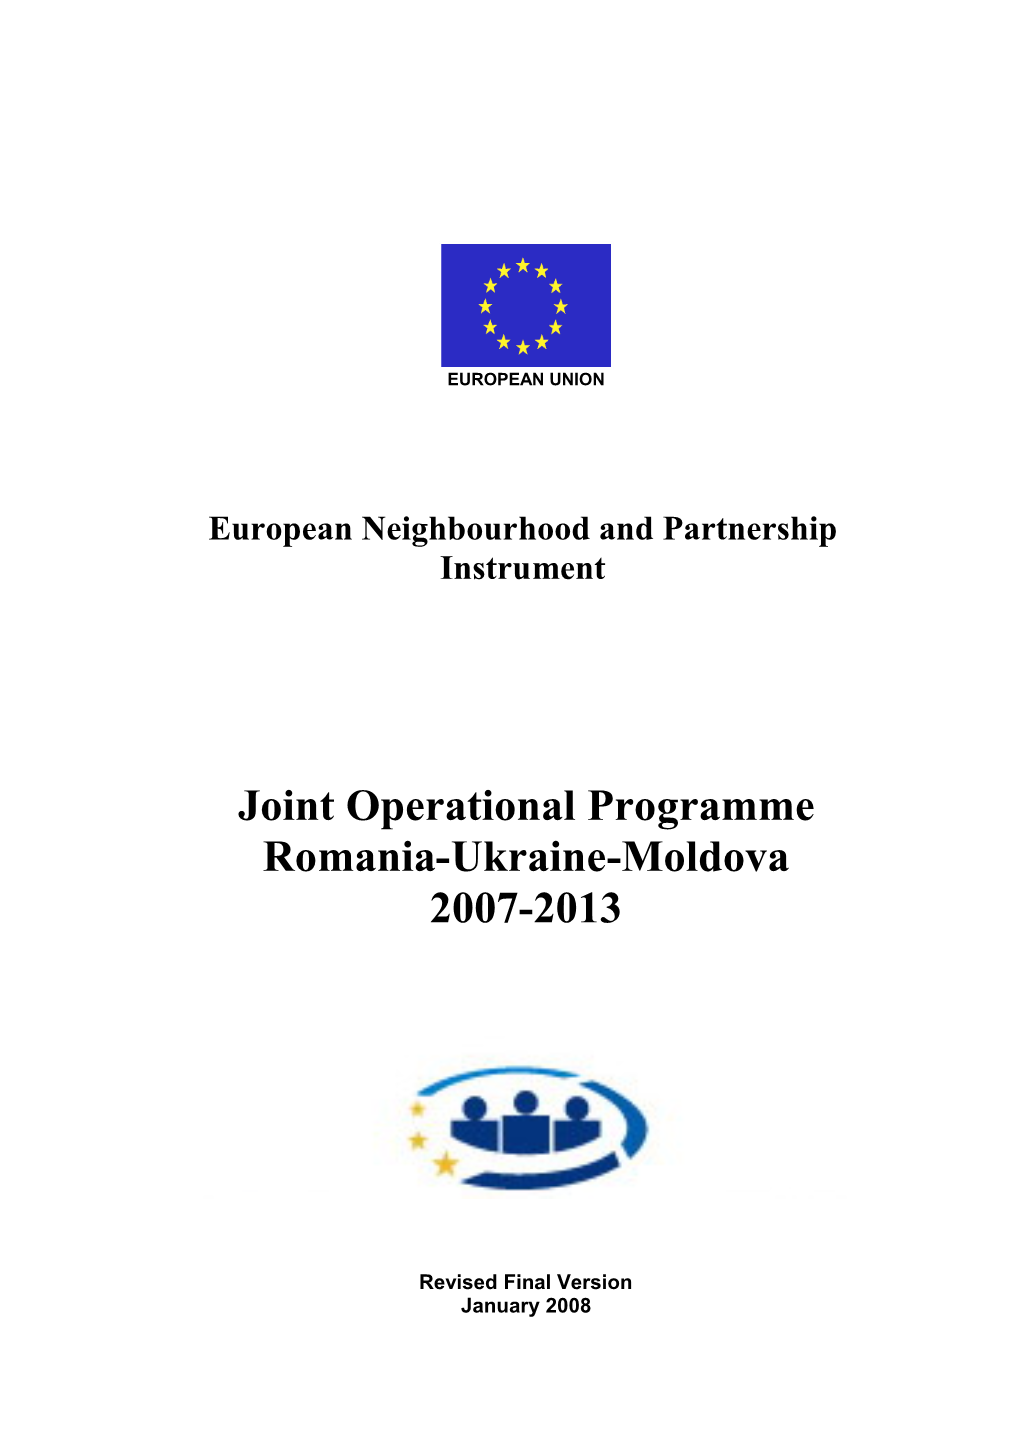 Joint Operational Programme Romania-Ukraine-Moldova 2007-2013